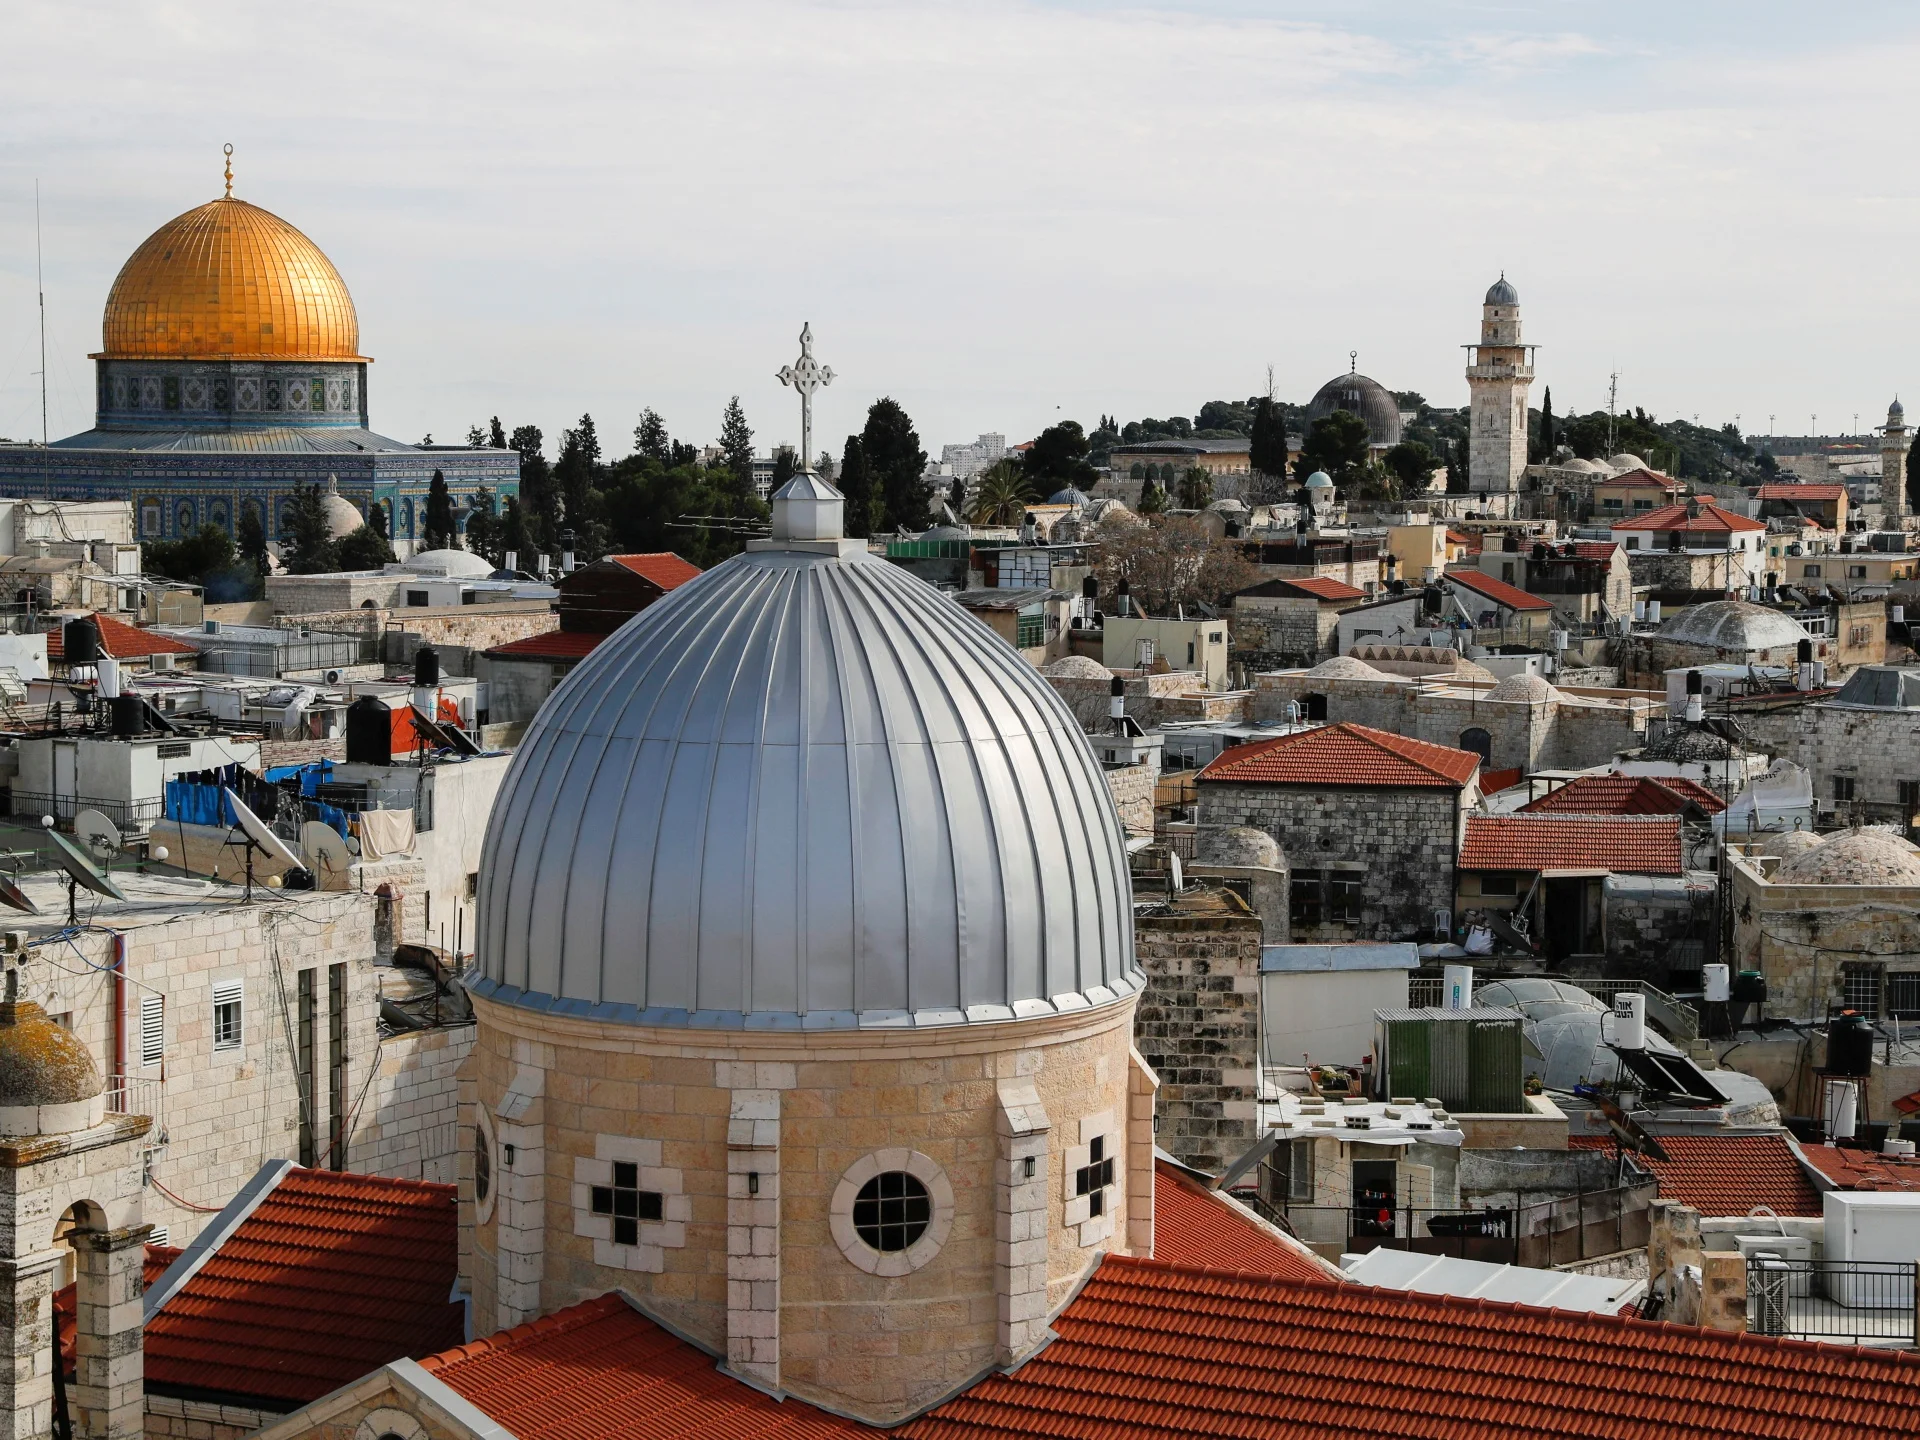 آسٹریلیا نے یروشلم کو اسرائیل کا دارالحکومت تسلیم کرنے کا فیصلہ واپس لیا